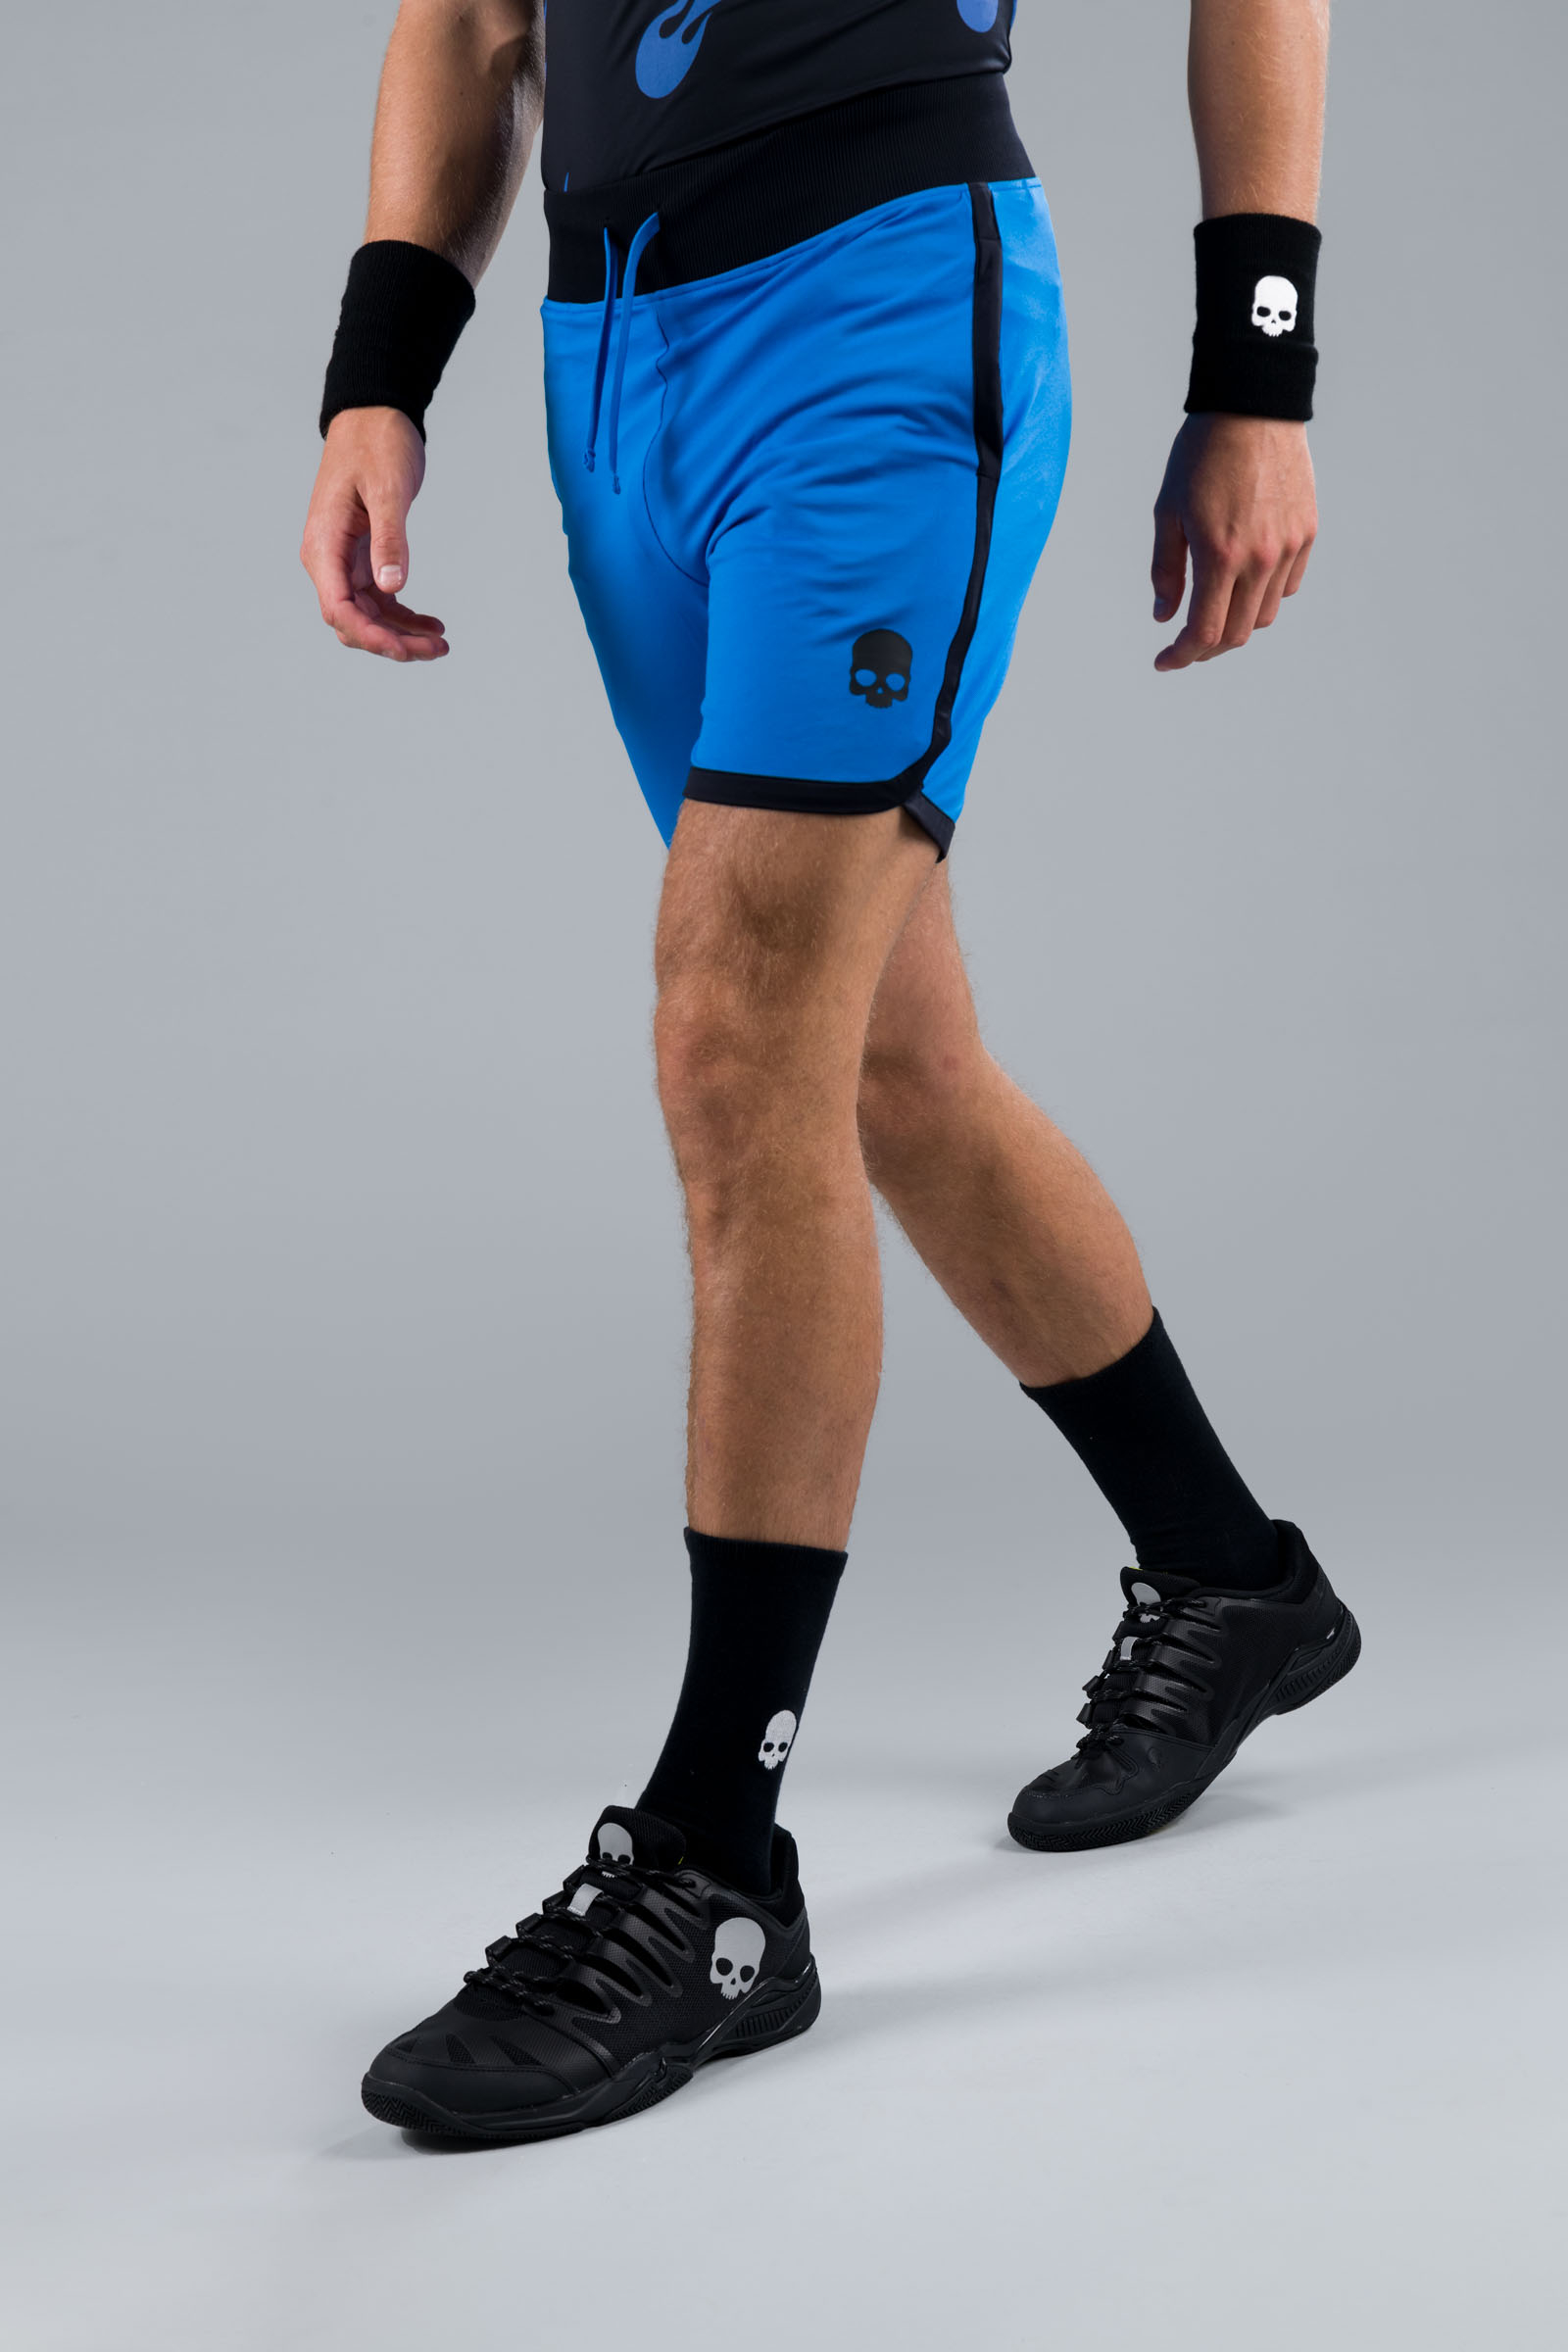 TECH SHORTS - BLUETTE - Abbigliamento sportivo | Hydrogen